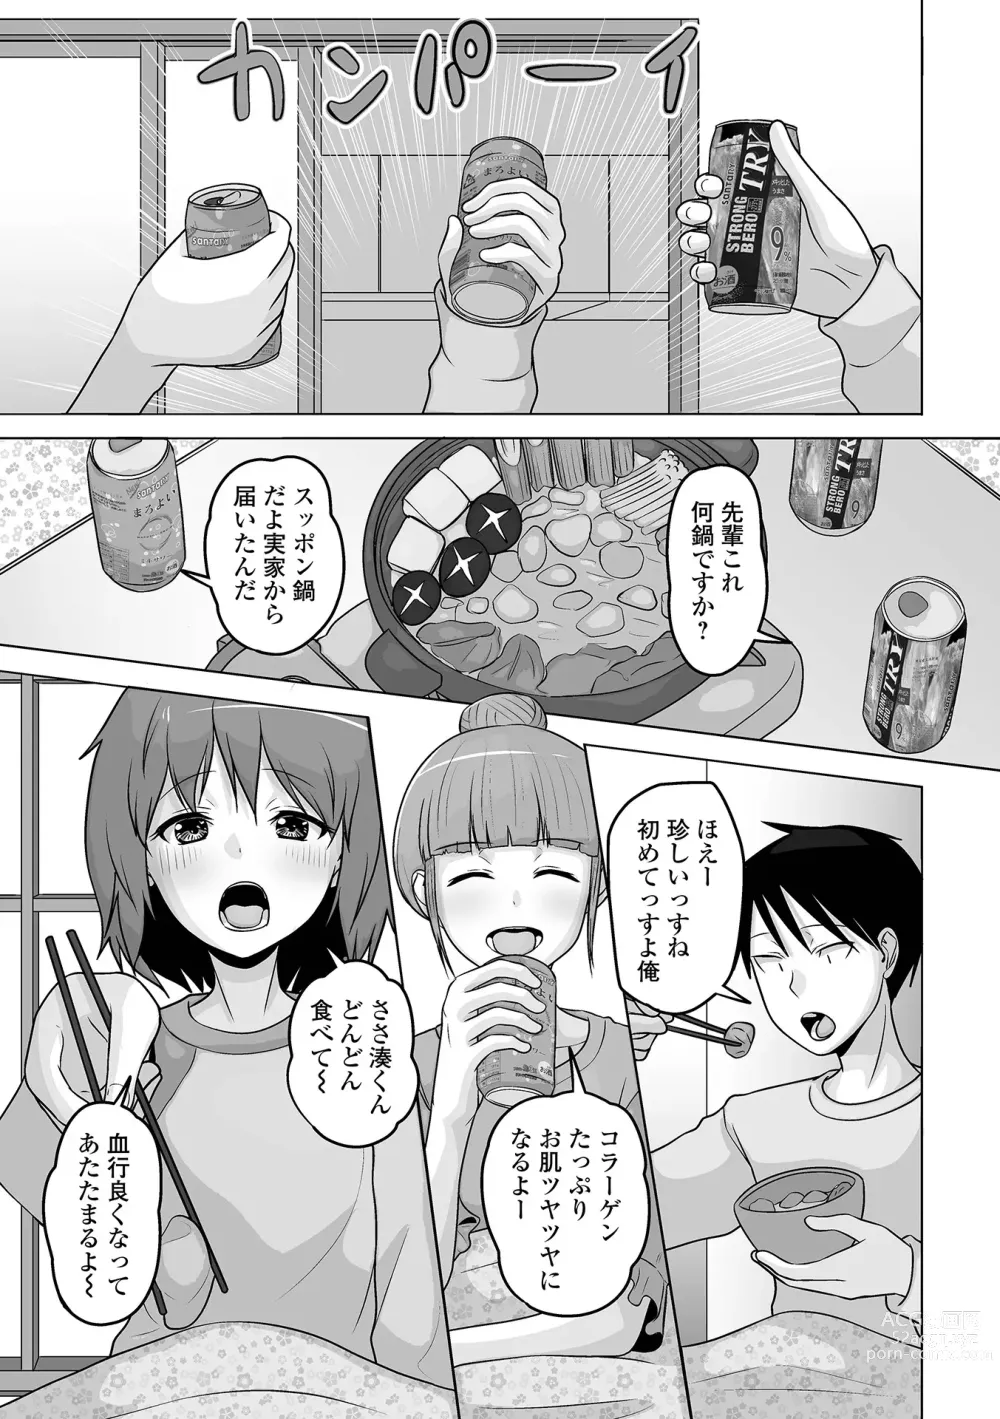 Page 69 of manga Gekkan Web Otoko no Ko-llection! S Vol. 95